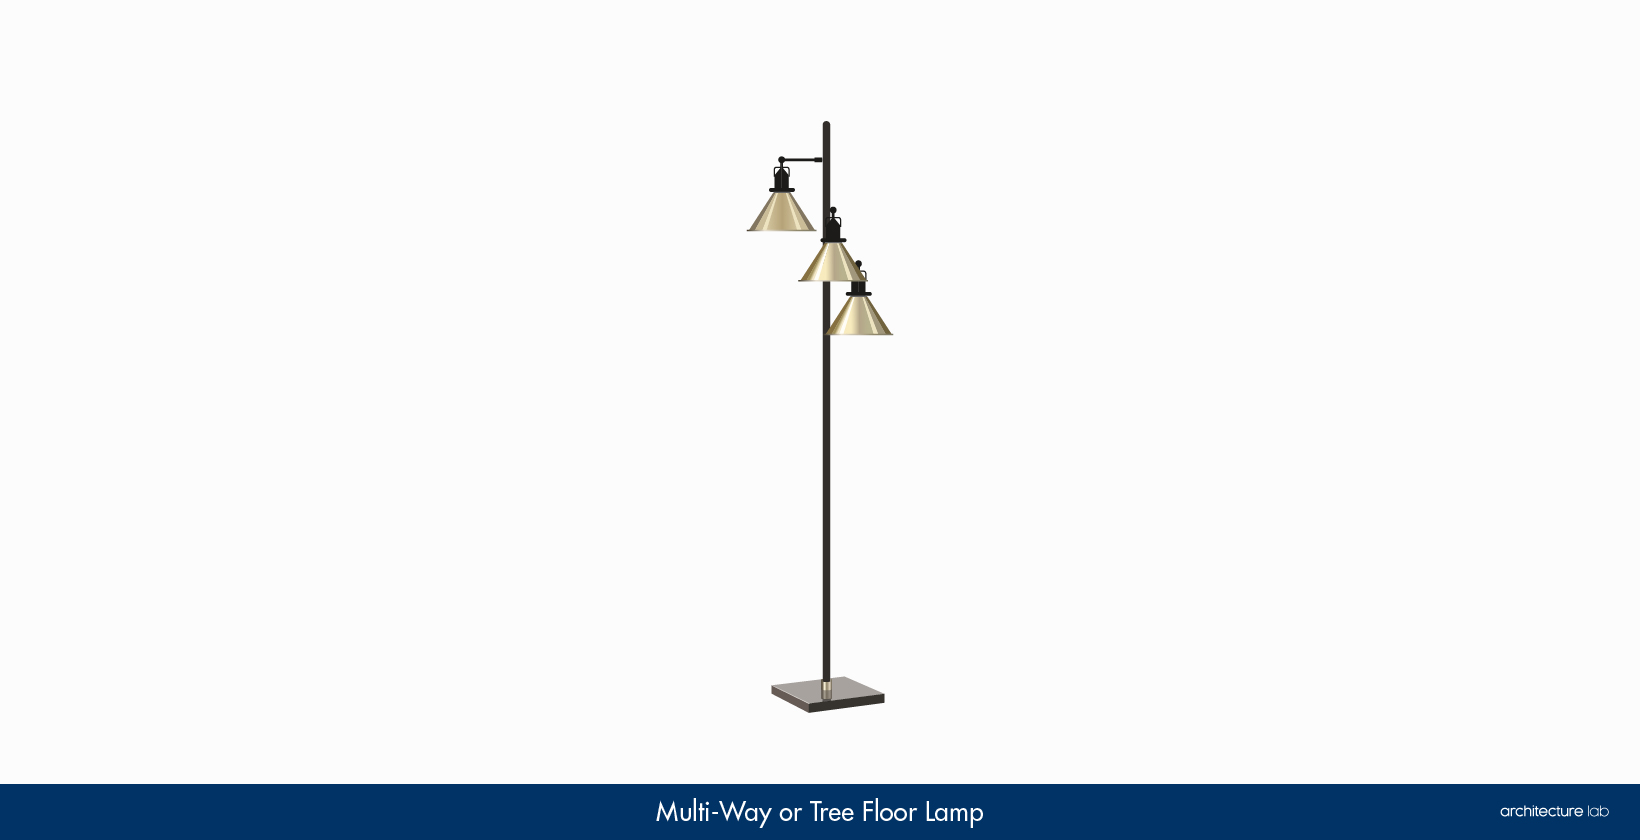 9. Multi-way or tree floor lamp